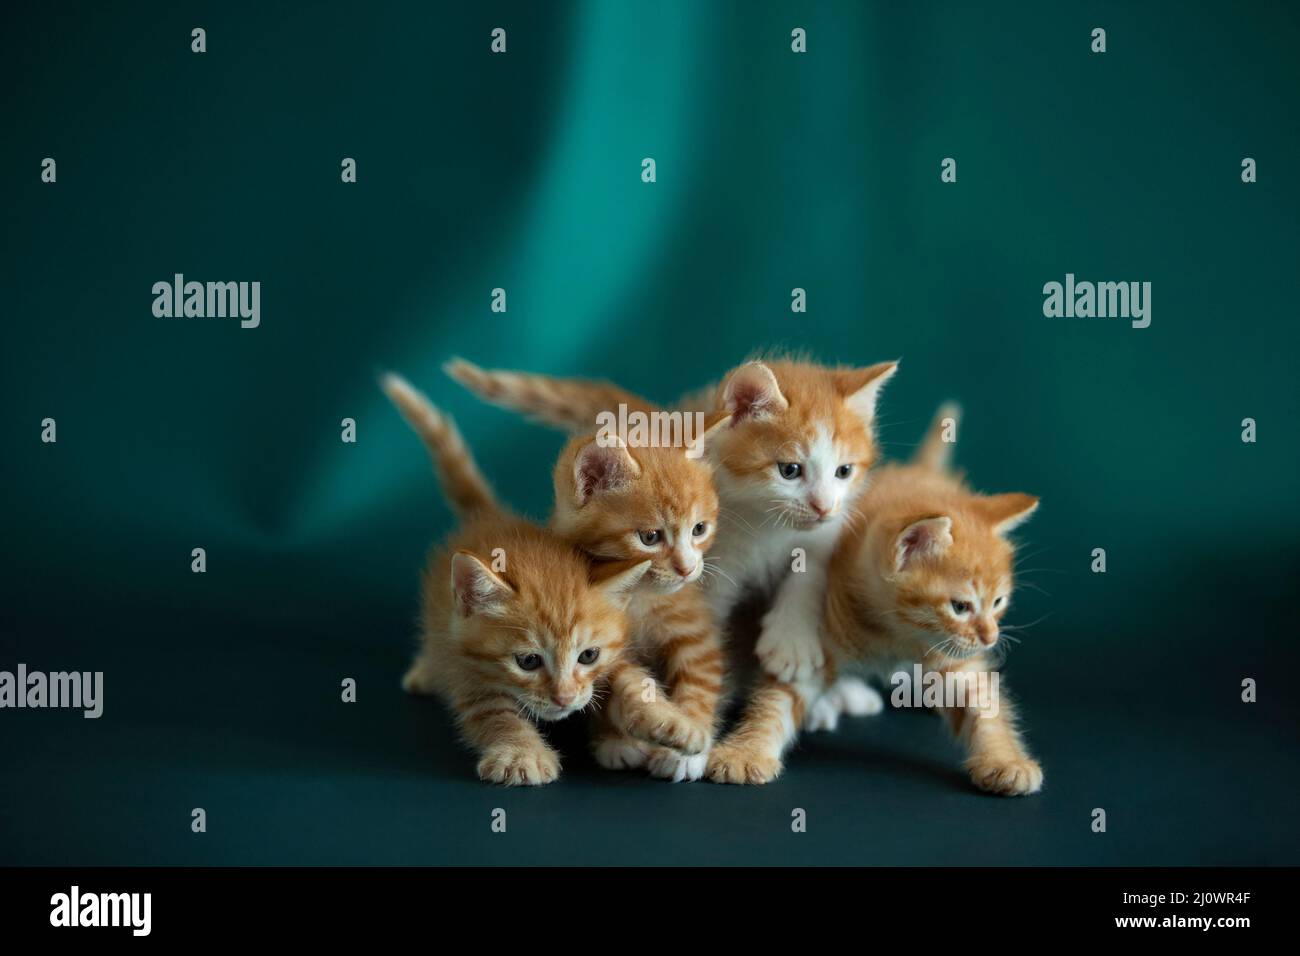 Quatre chatons marchent côte à côte - photo de stock Banque D'Images